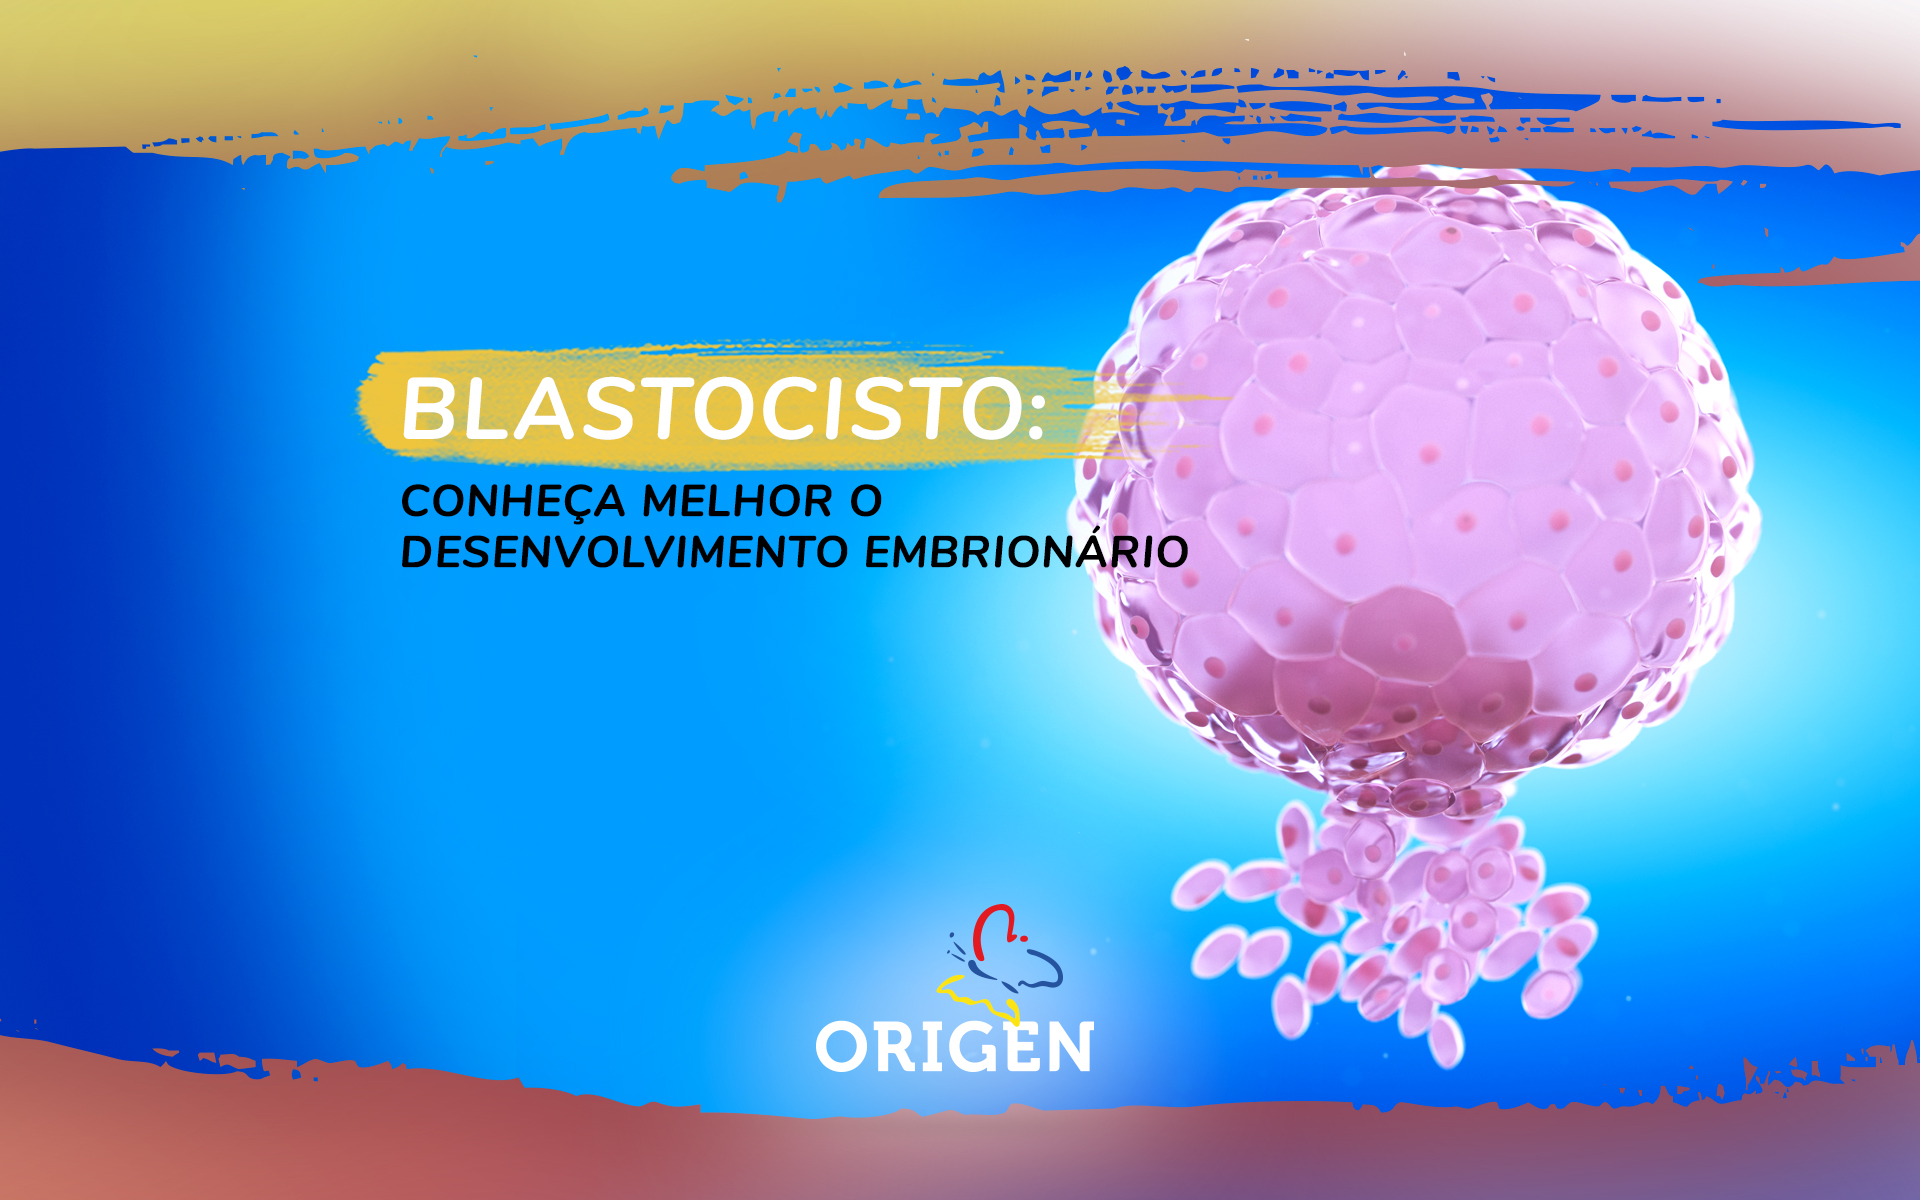 Blastocisto: conheça melhor o desenvolvimento embrionário